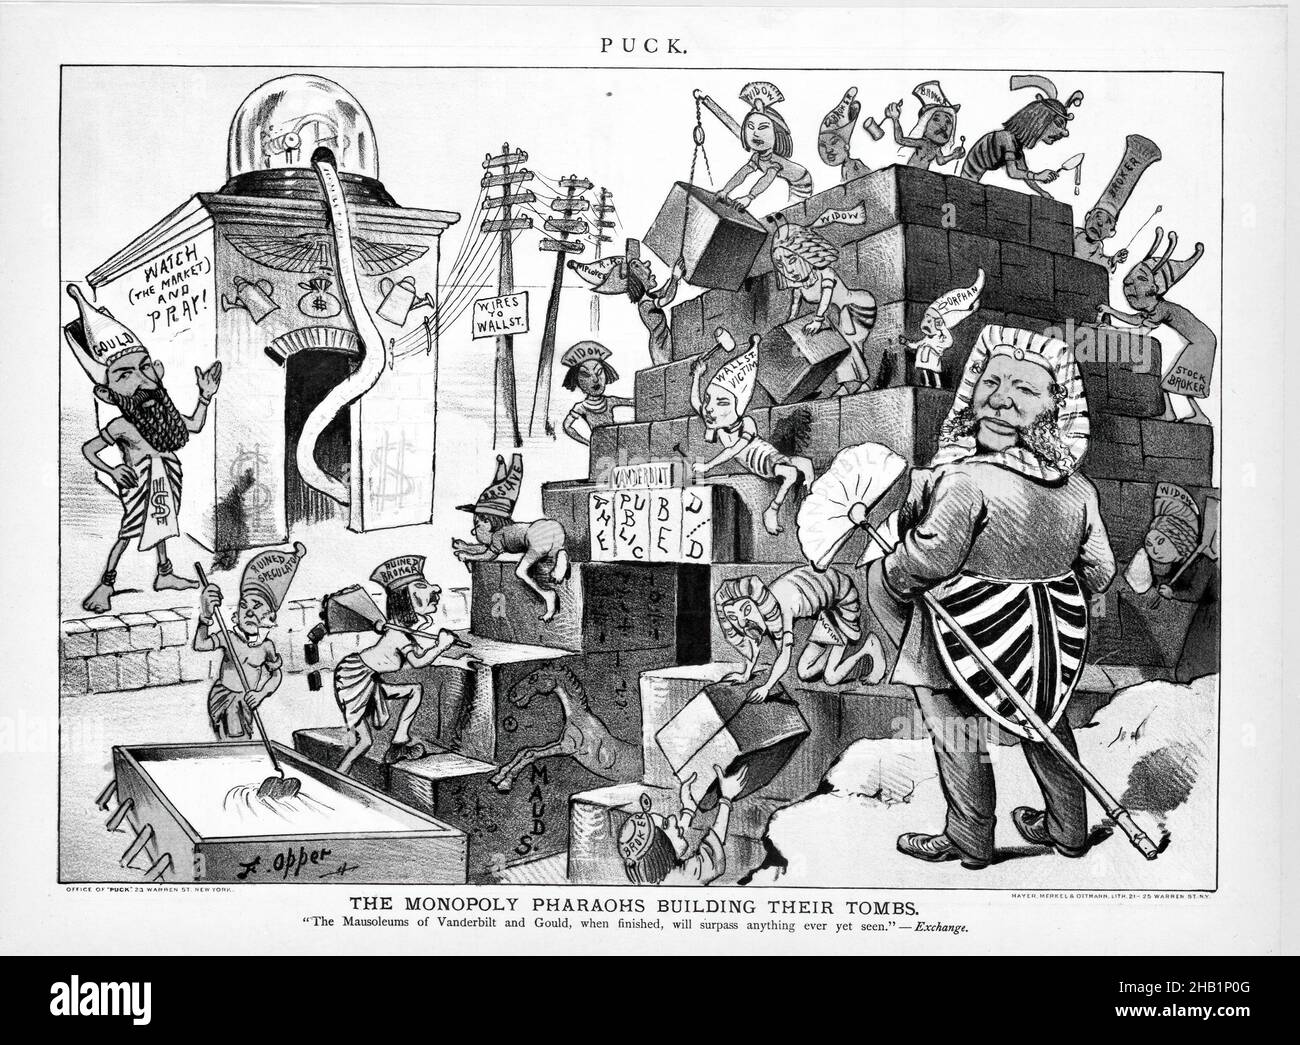 Cartoon, il monopolio Pharoahs costruire le loro tombe, Frederick Burr Opper, americano, 1857-1937, carta stampata, 1883, 9 13/16 x 13 3/16 pollici, 24,9 x 33,5 cm Foto Stock